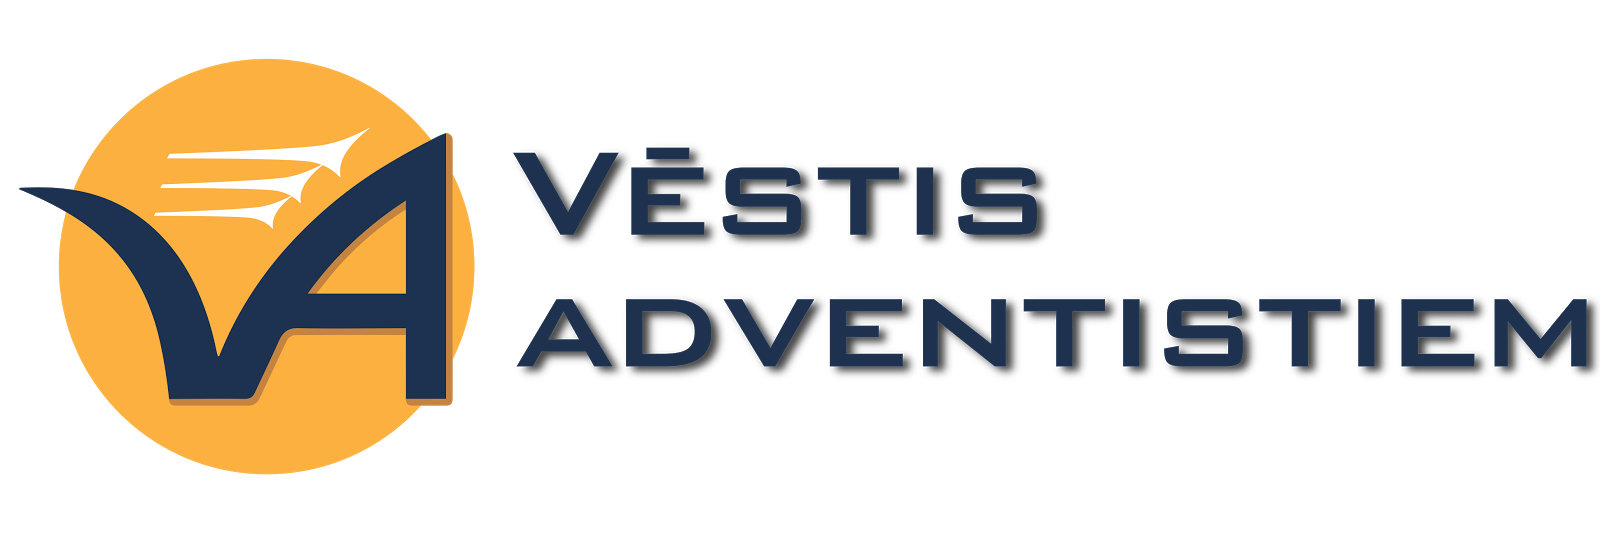 Vēstis Adventistiem